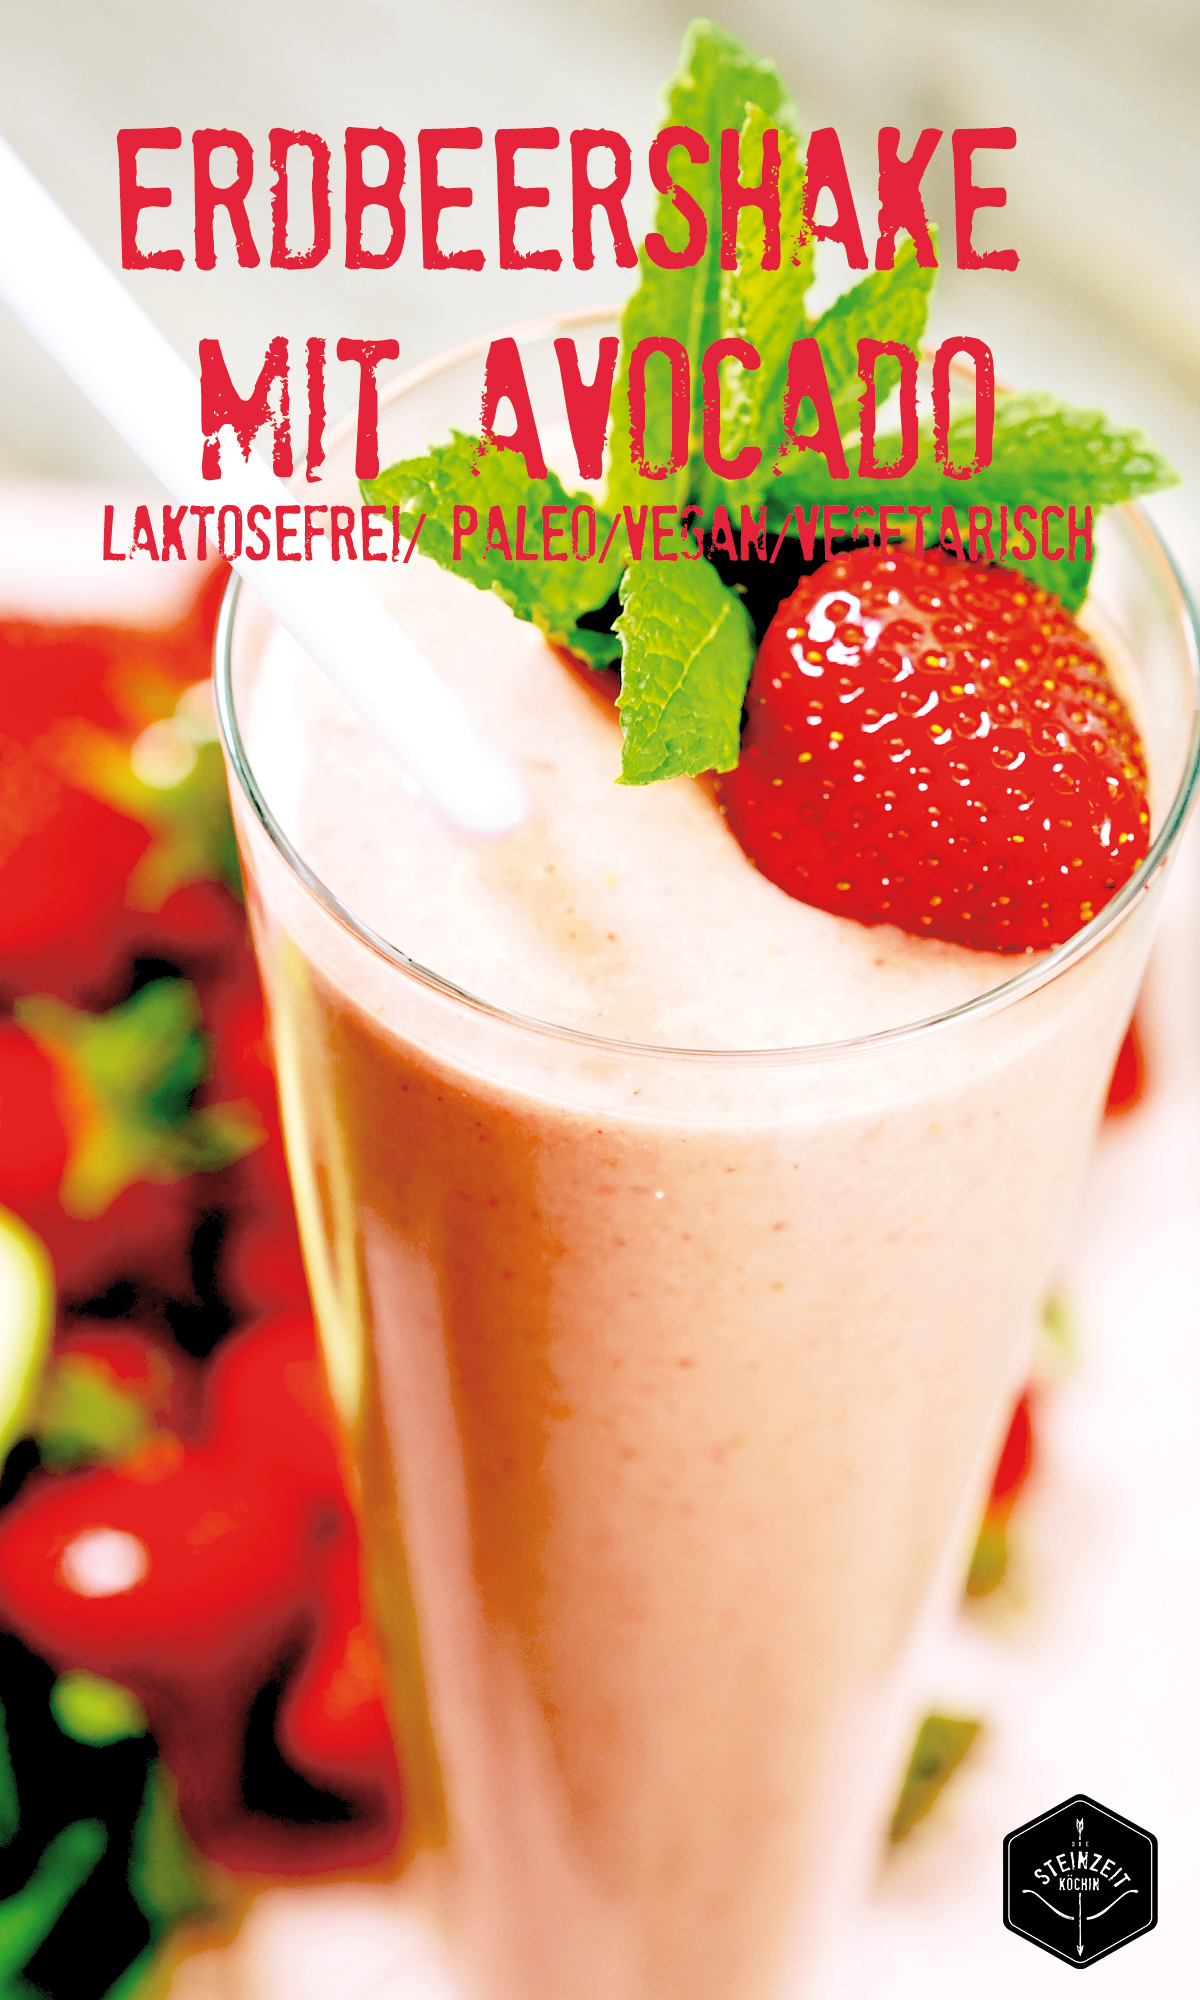 Erdbeer-Smoothie, kohlehydratfrei, laktosefrei, Paleo, Frühstücksidee, gesundes Essen, fruchtig, Avocados, abnehmen